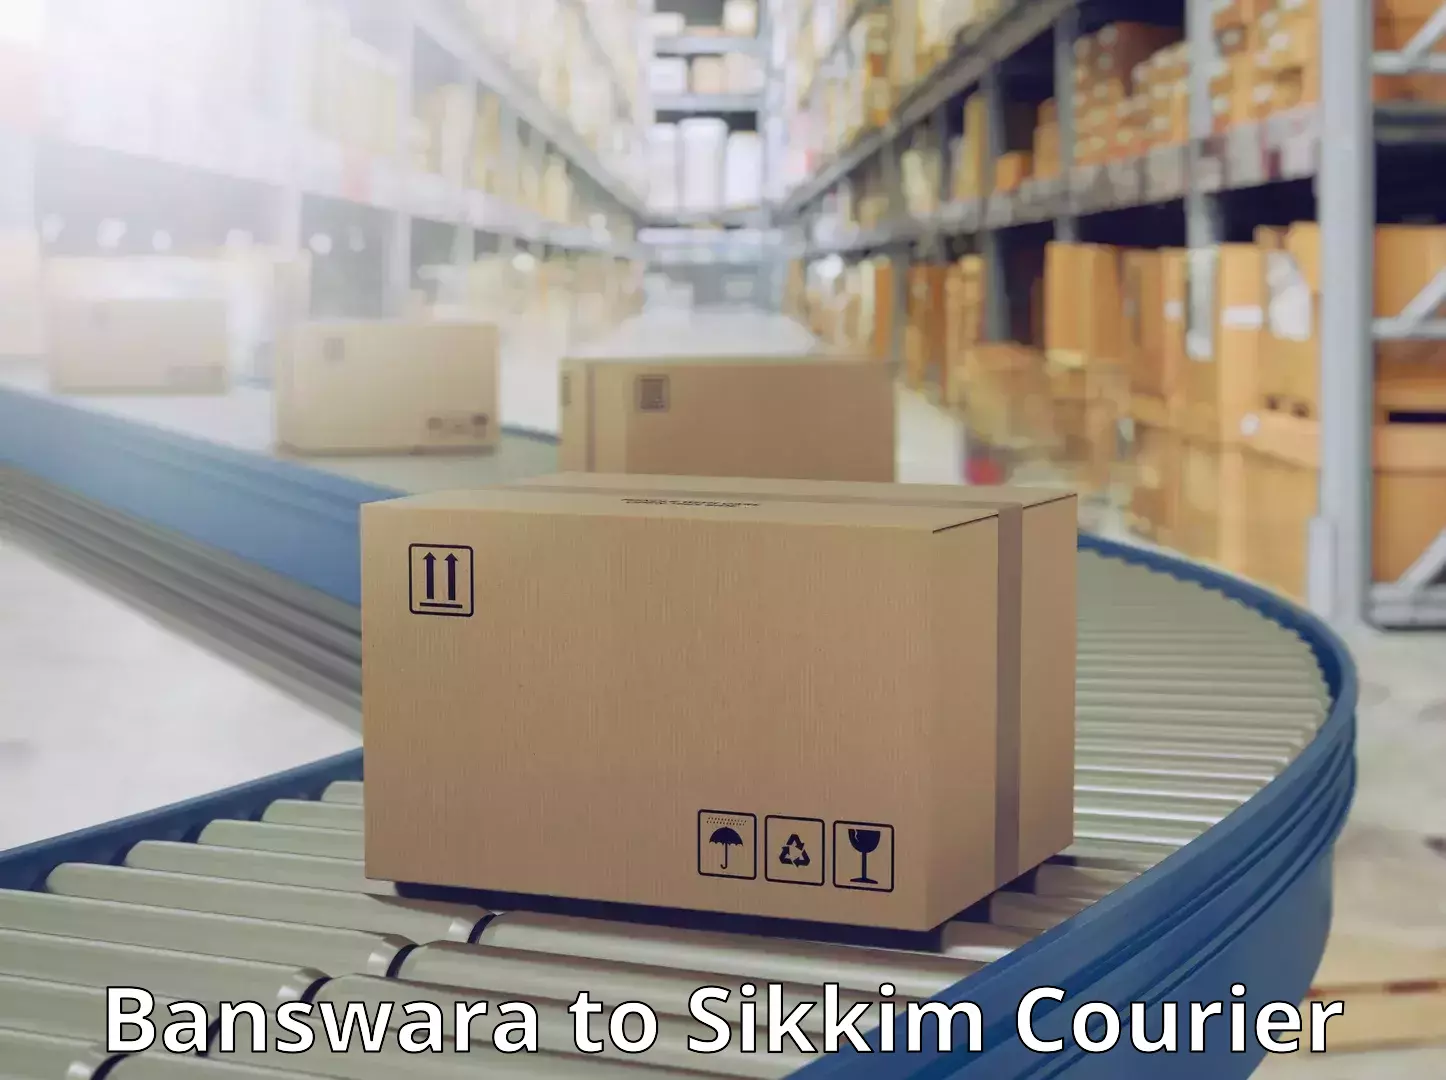 24-hour courier services Banswara to Singtam